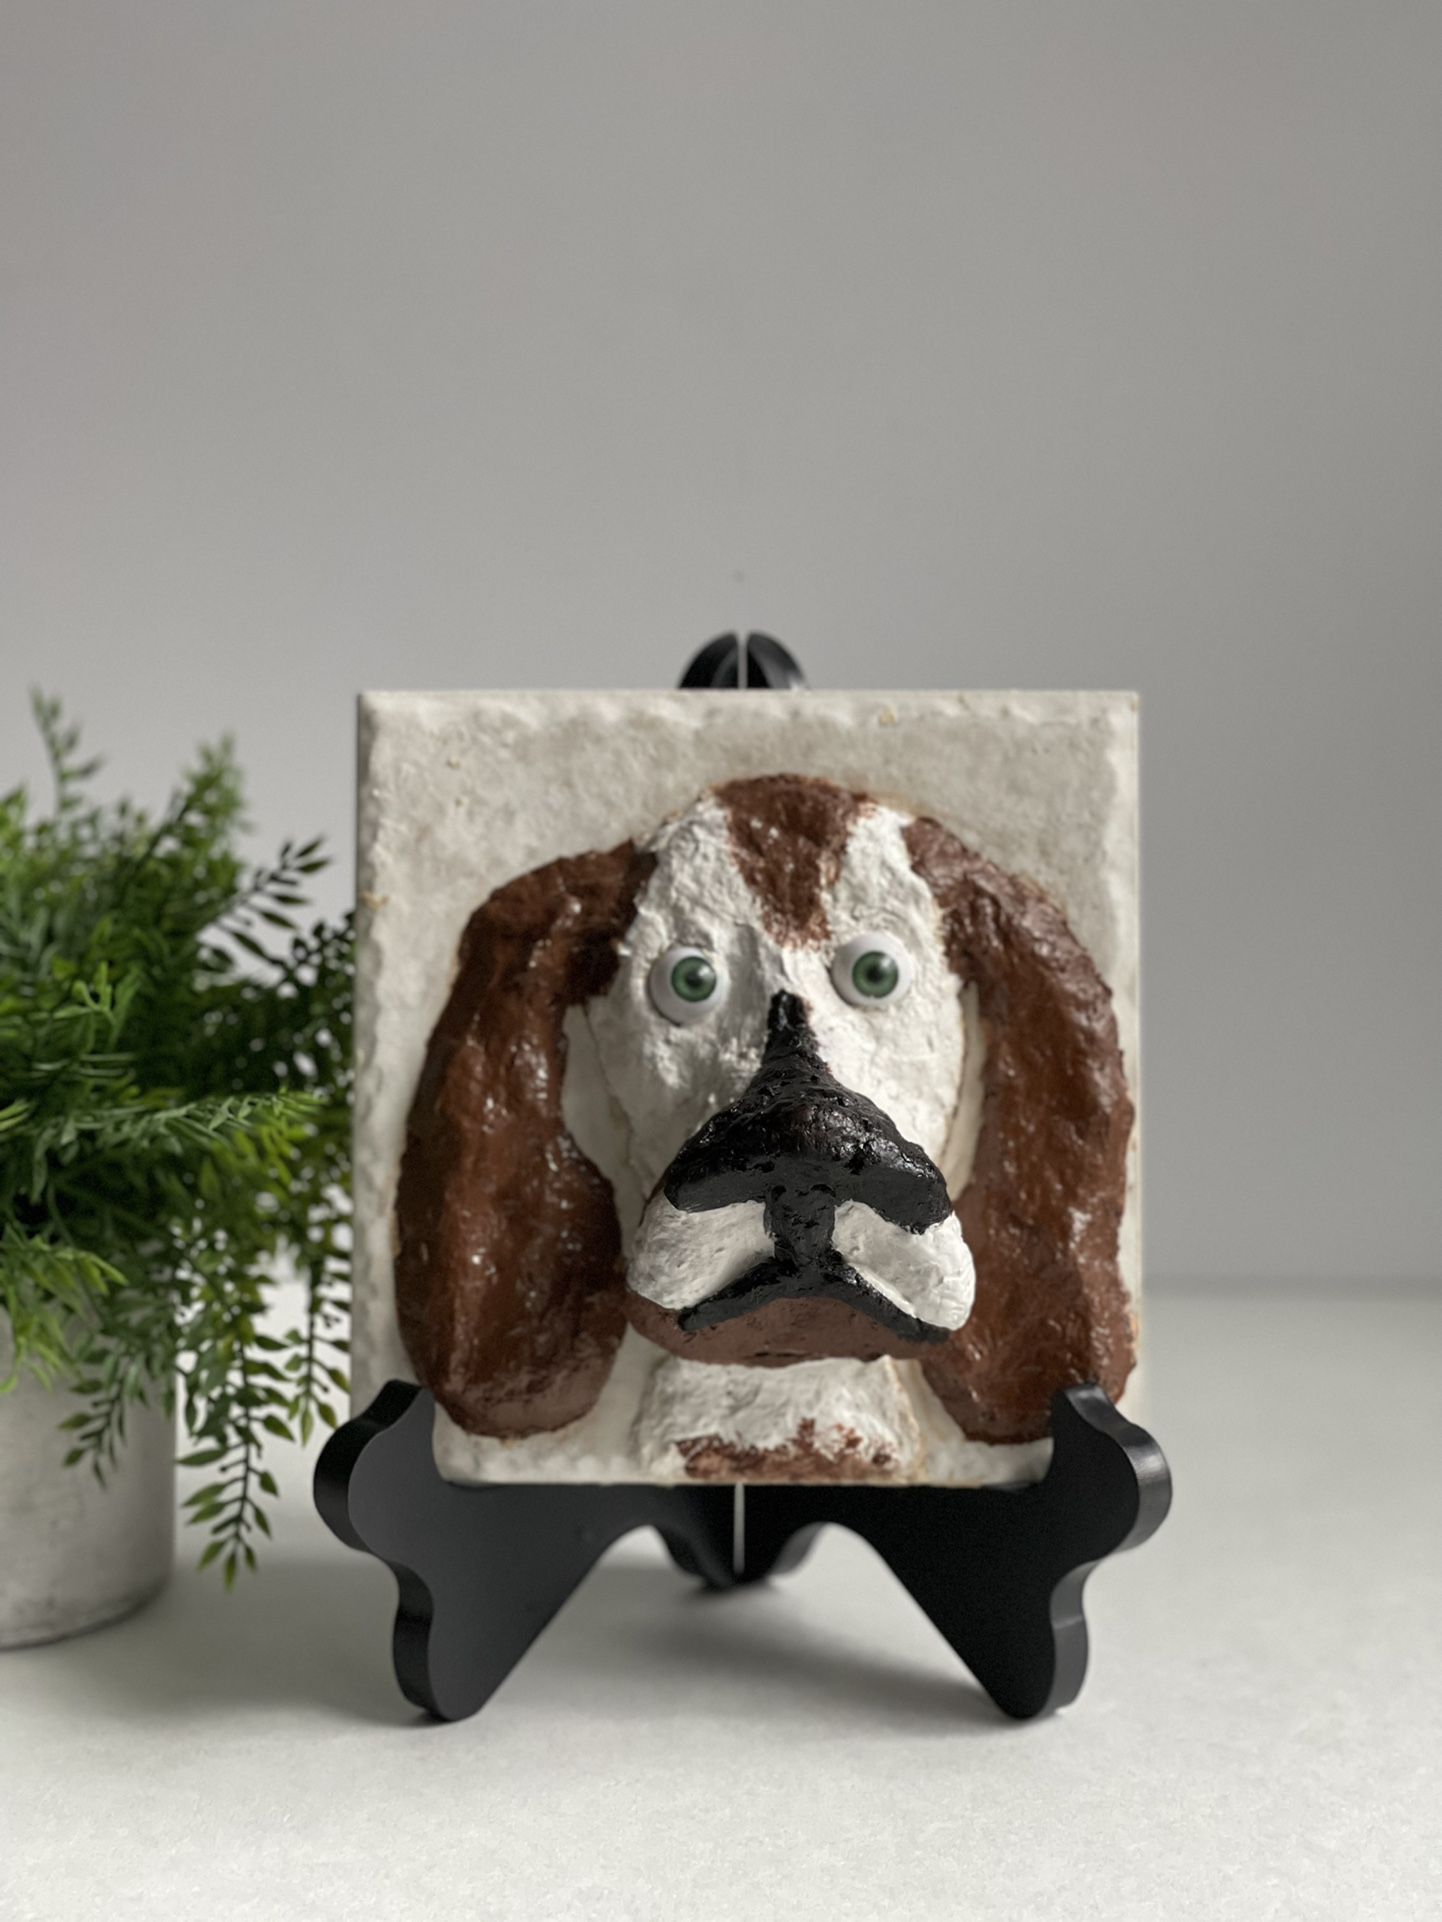 Beulah Basset Hound 3D Plaster Sculpture on Tile. “UNIQUE”